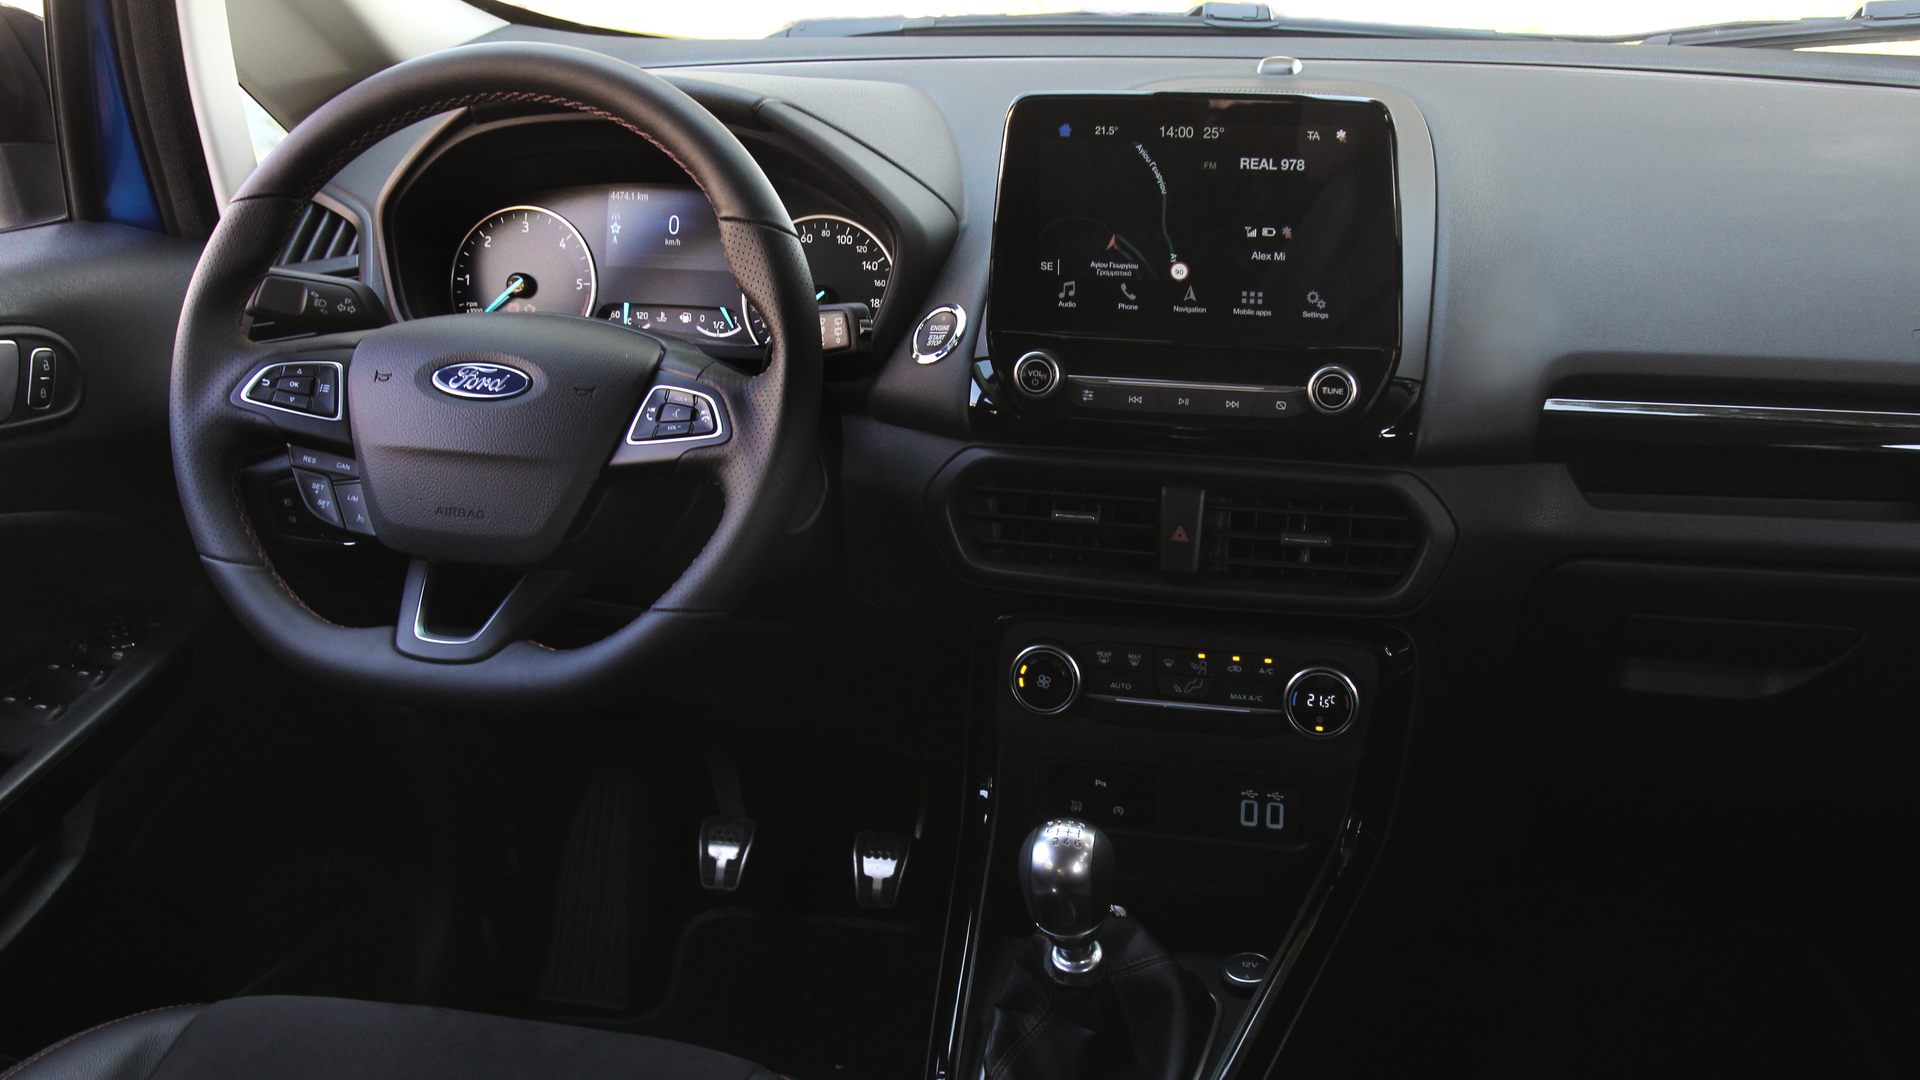 Ford EcoSport 1.5 EcoBlue AWD interior